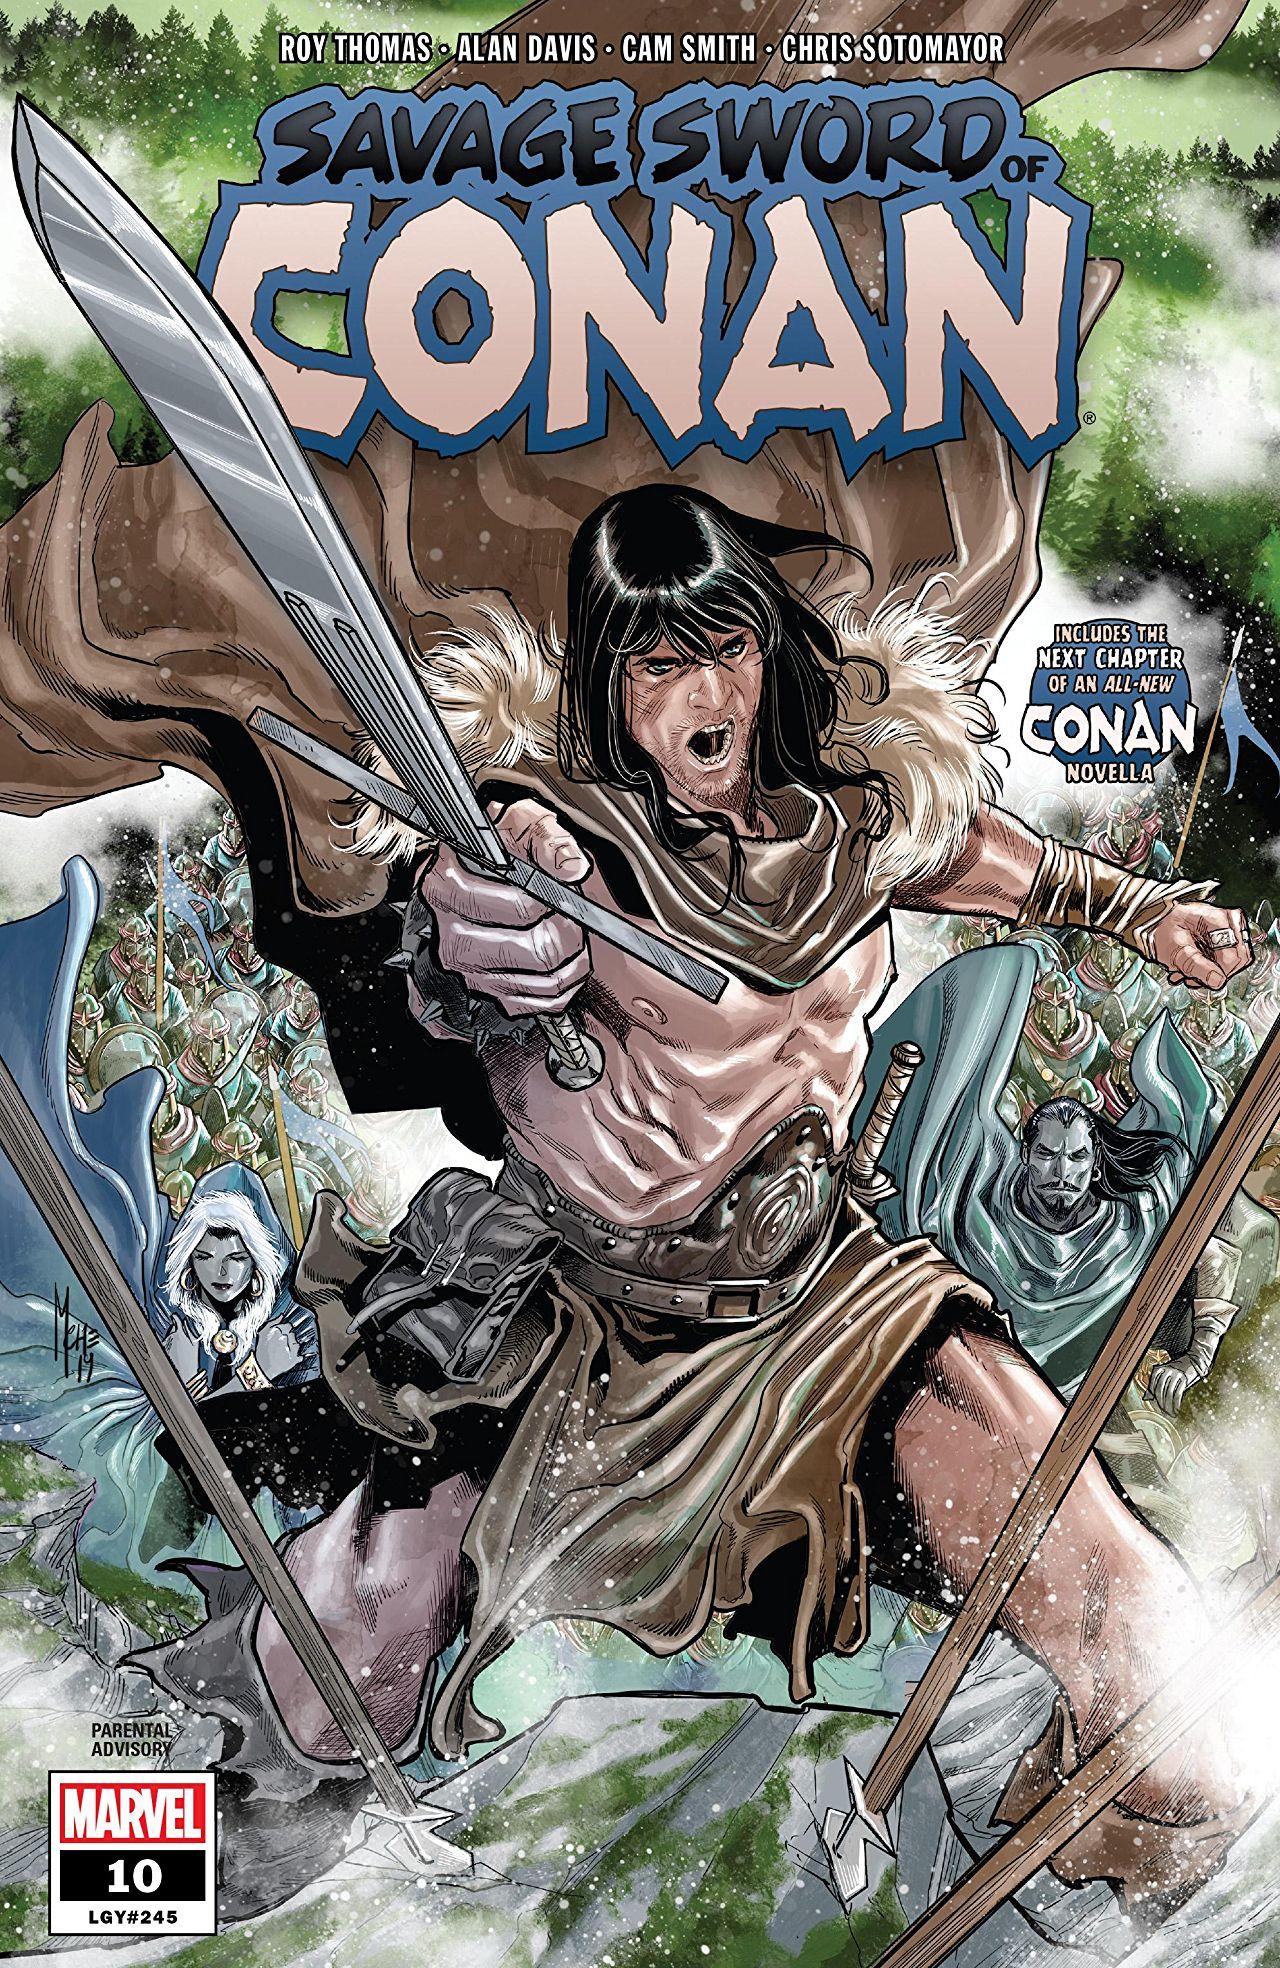 Savage Sword of Conan Vol. 2 #10